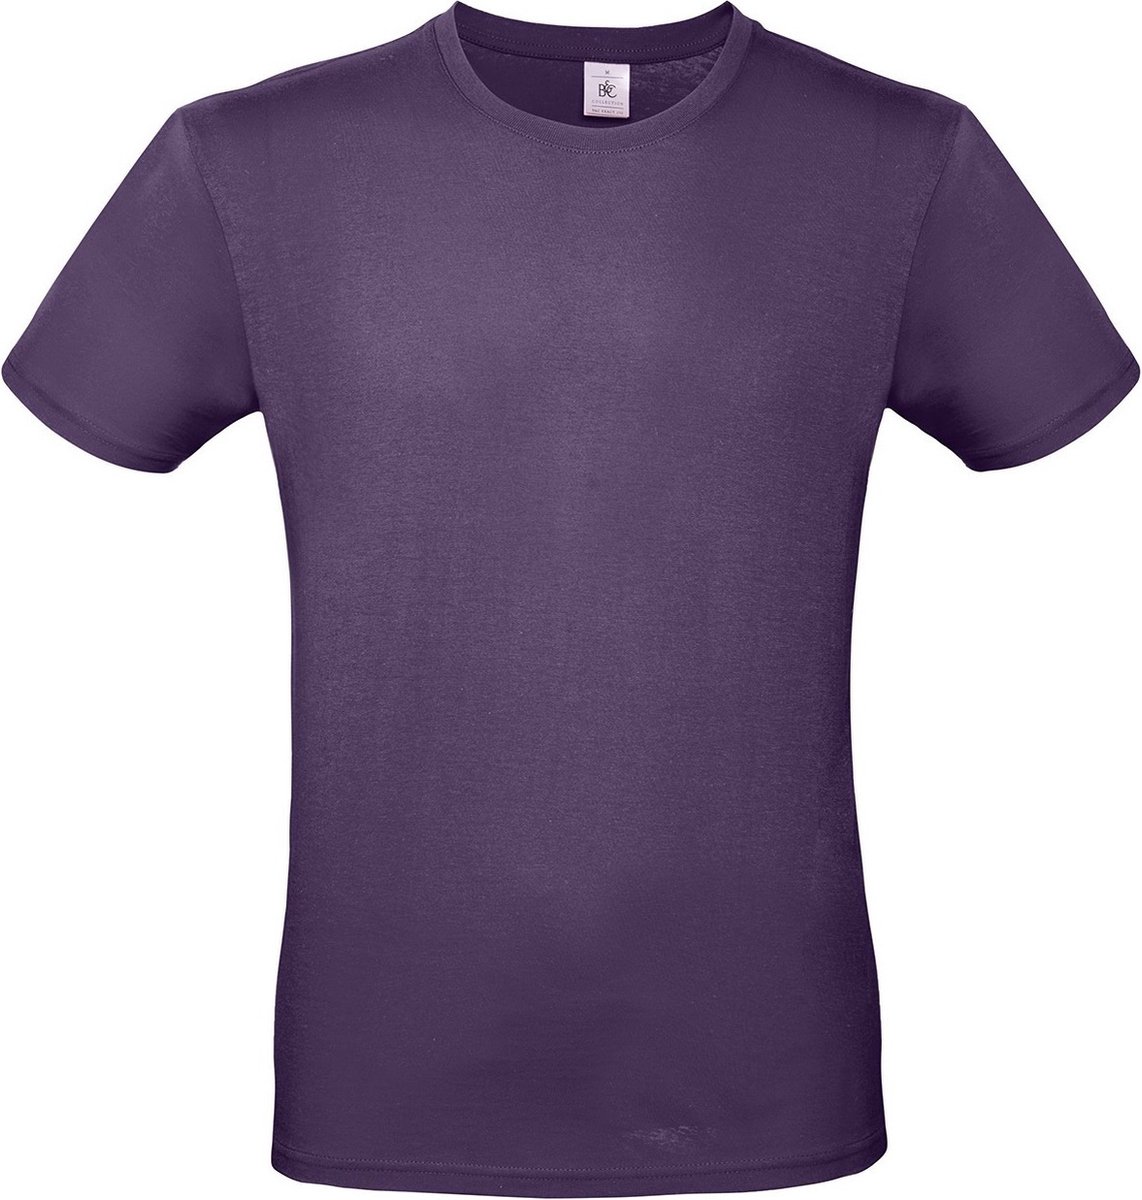 Paars basic t-shirt met ronde hals voor heren - katoen - 145 grams - paarse shirts / kleding M (50)